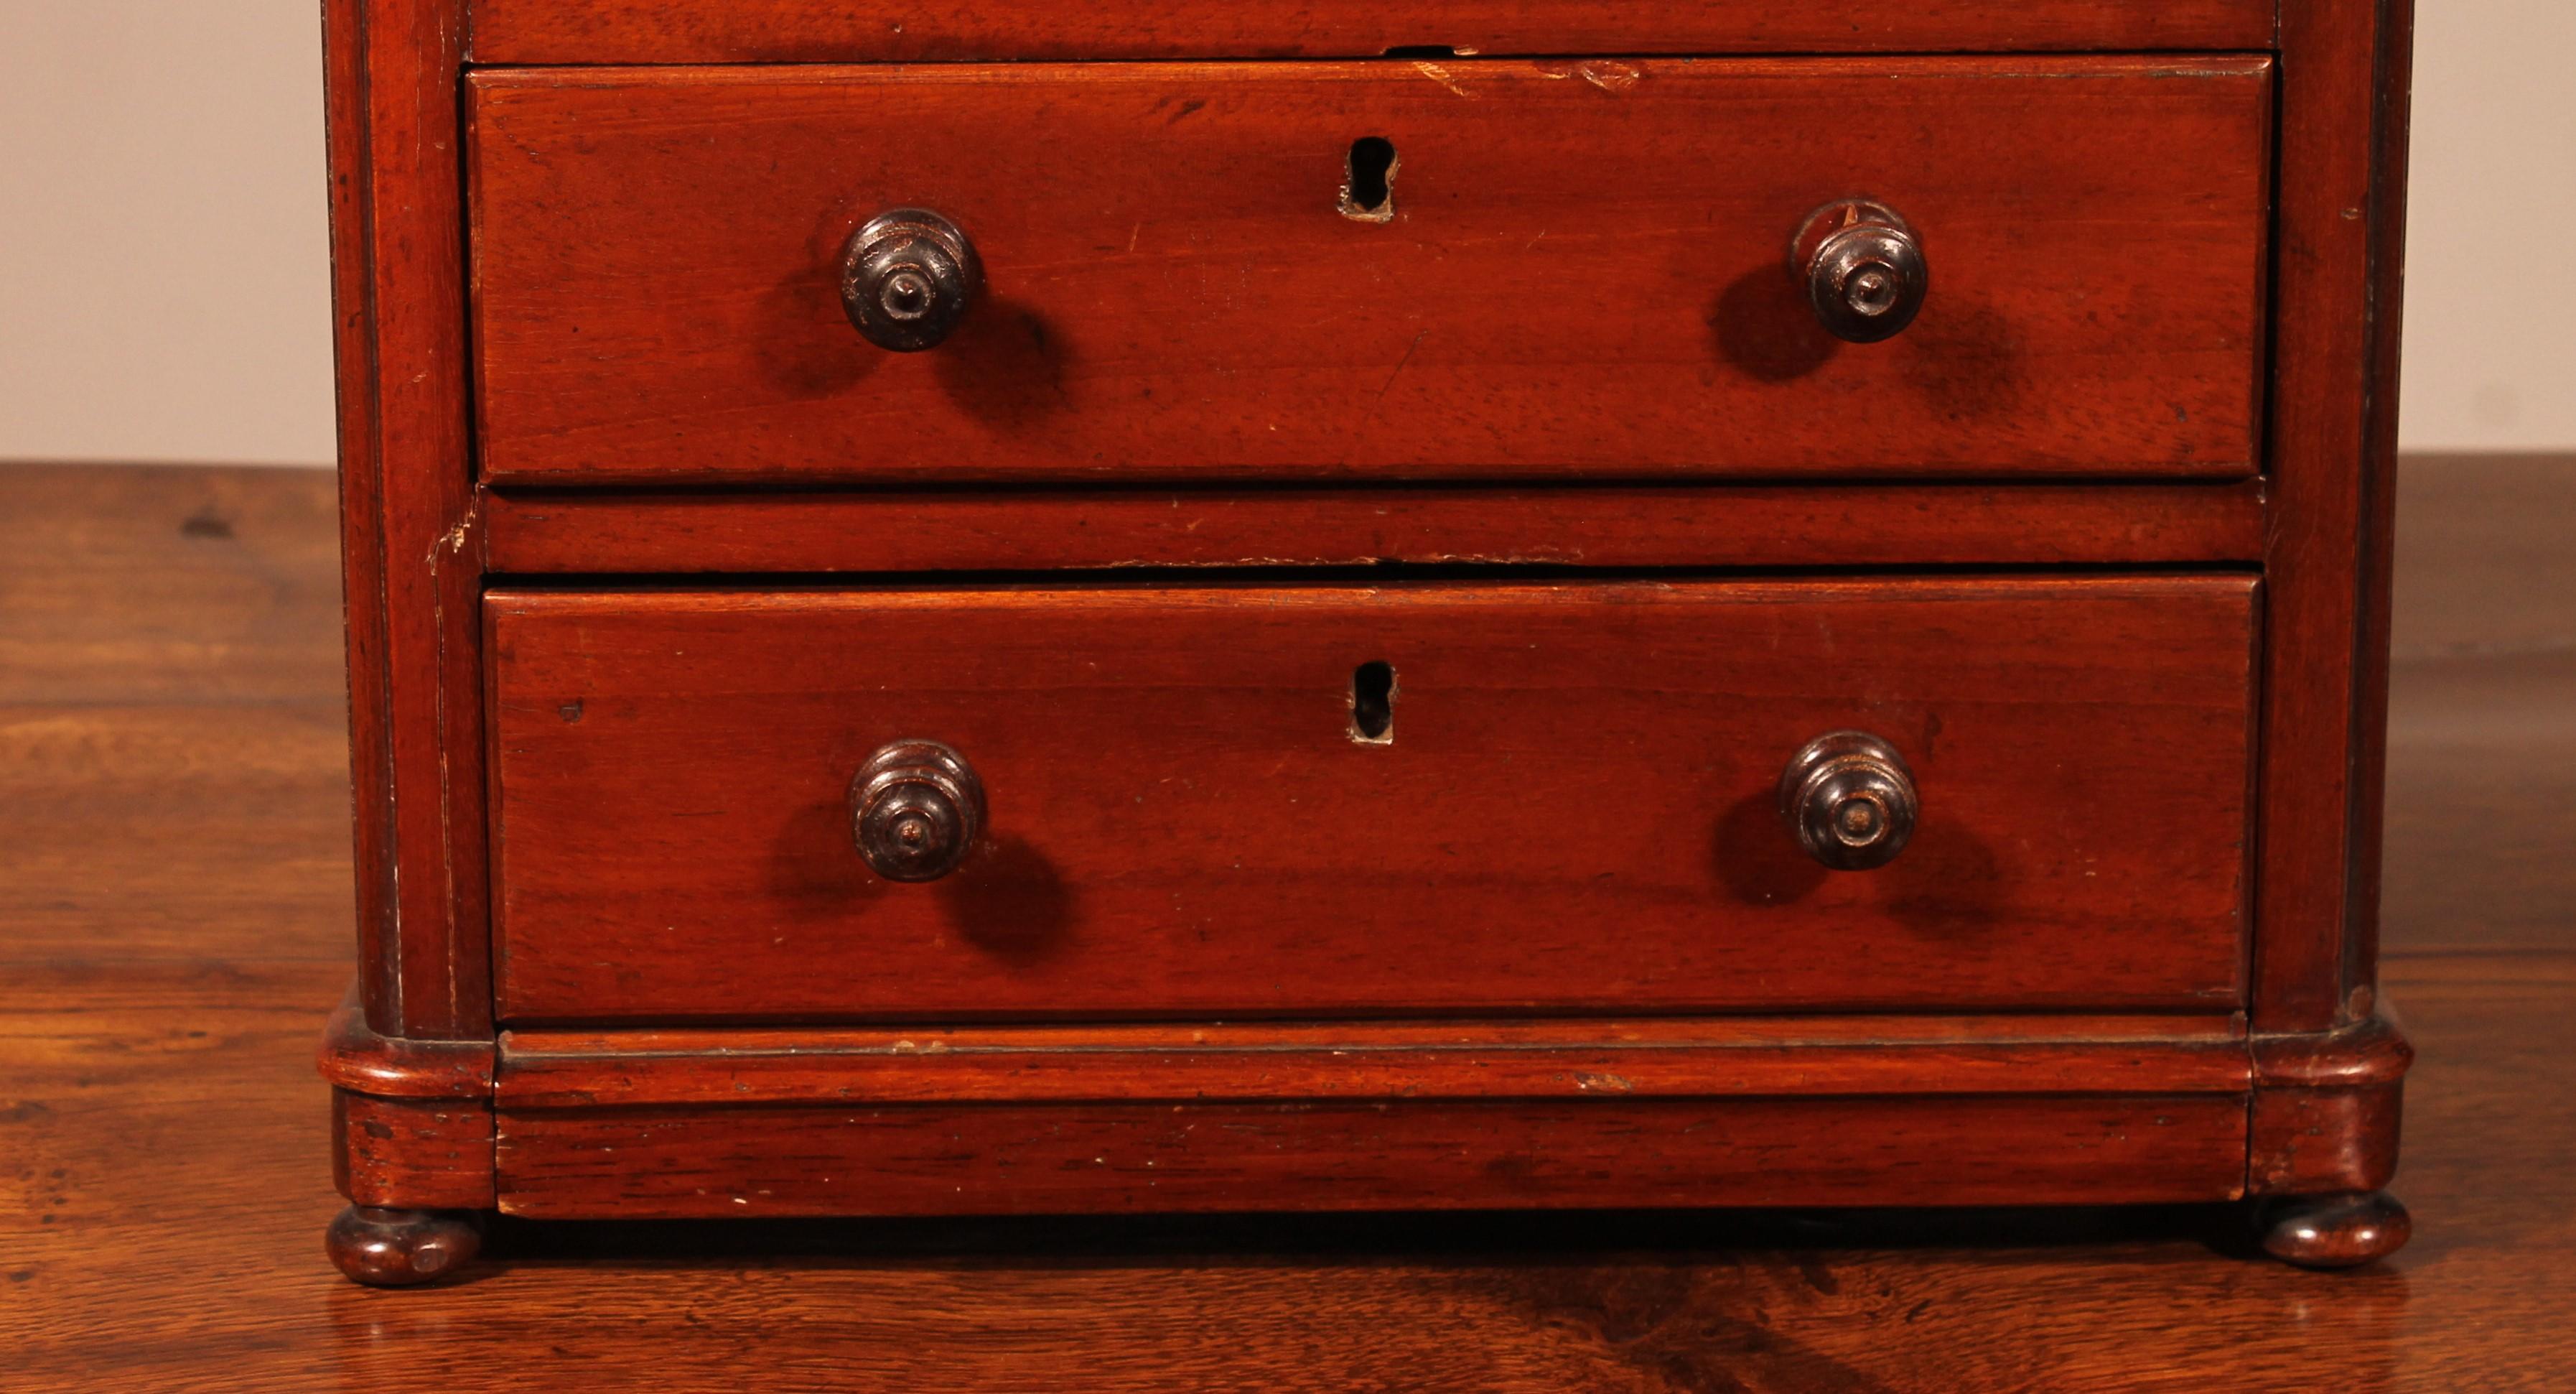 Hübsche kleine Mahagoni-Miniaturkommode aus dem 19. Jahrhundert aus England
Kommode mit doppelter Schublade oben und unterer Schublade mit in die Schublade integriertem Sockel, was selten ist
in sehr gutem Zustand und schöner Patina